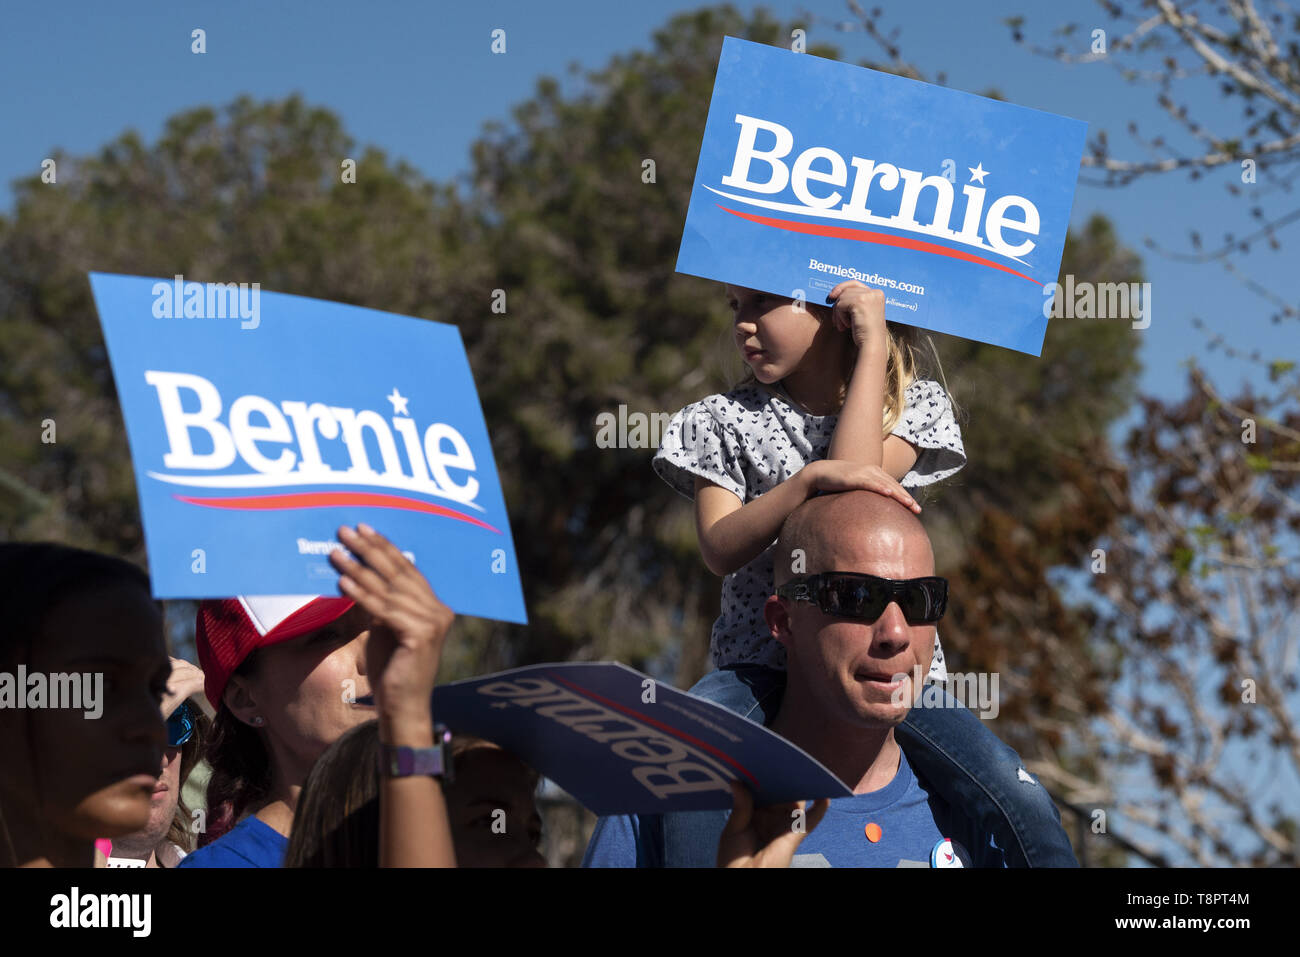 Henderson, Nevada, USA. Mar 16, 2019. Un enfant vu holding a placard qui dit Bernie durant la campagne rassemblement à Henderson. Ronen Crédit : Tivony SOPA/Images/ZUMA/Alamy Fil Live News Banque D'Images